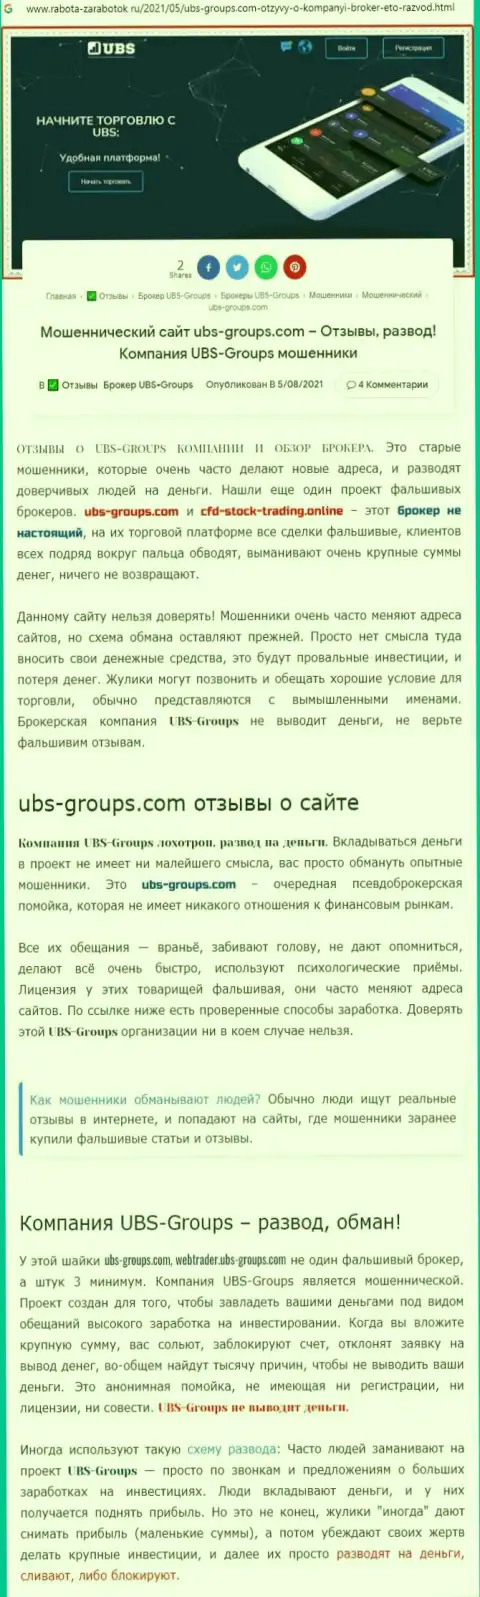 Подробный анализ методов обувания UBS-Groups (обзорная статья)